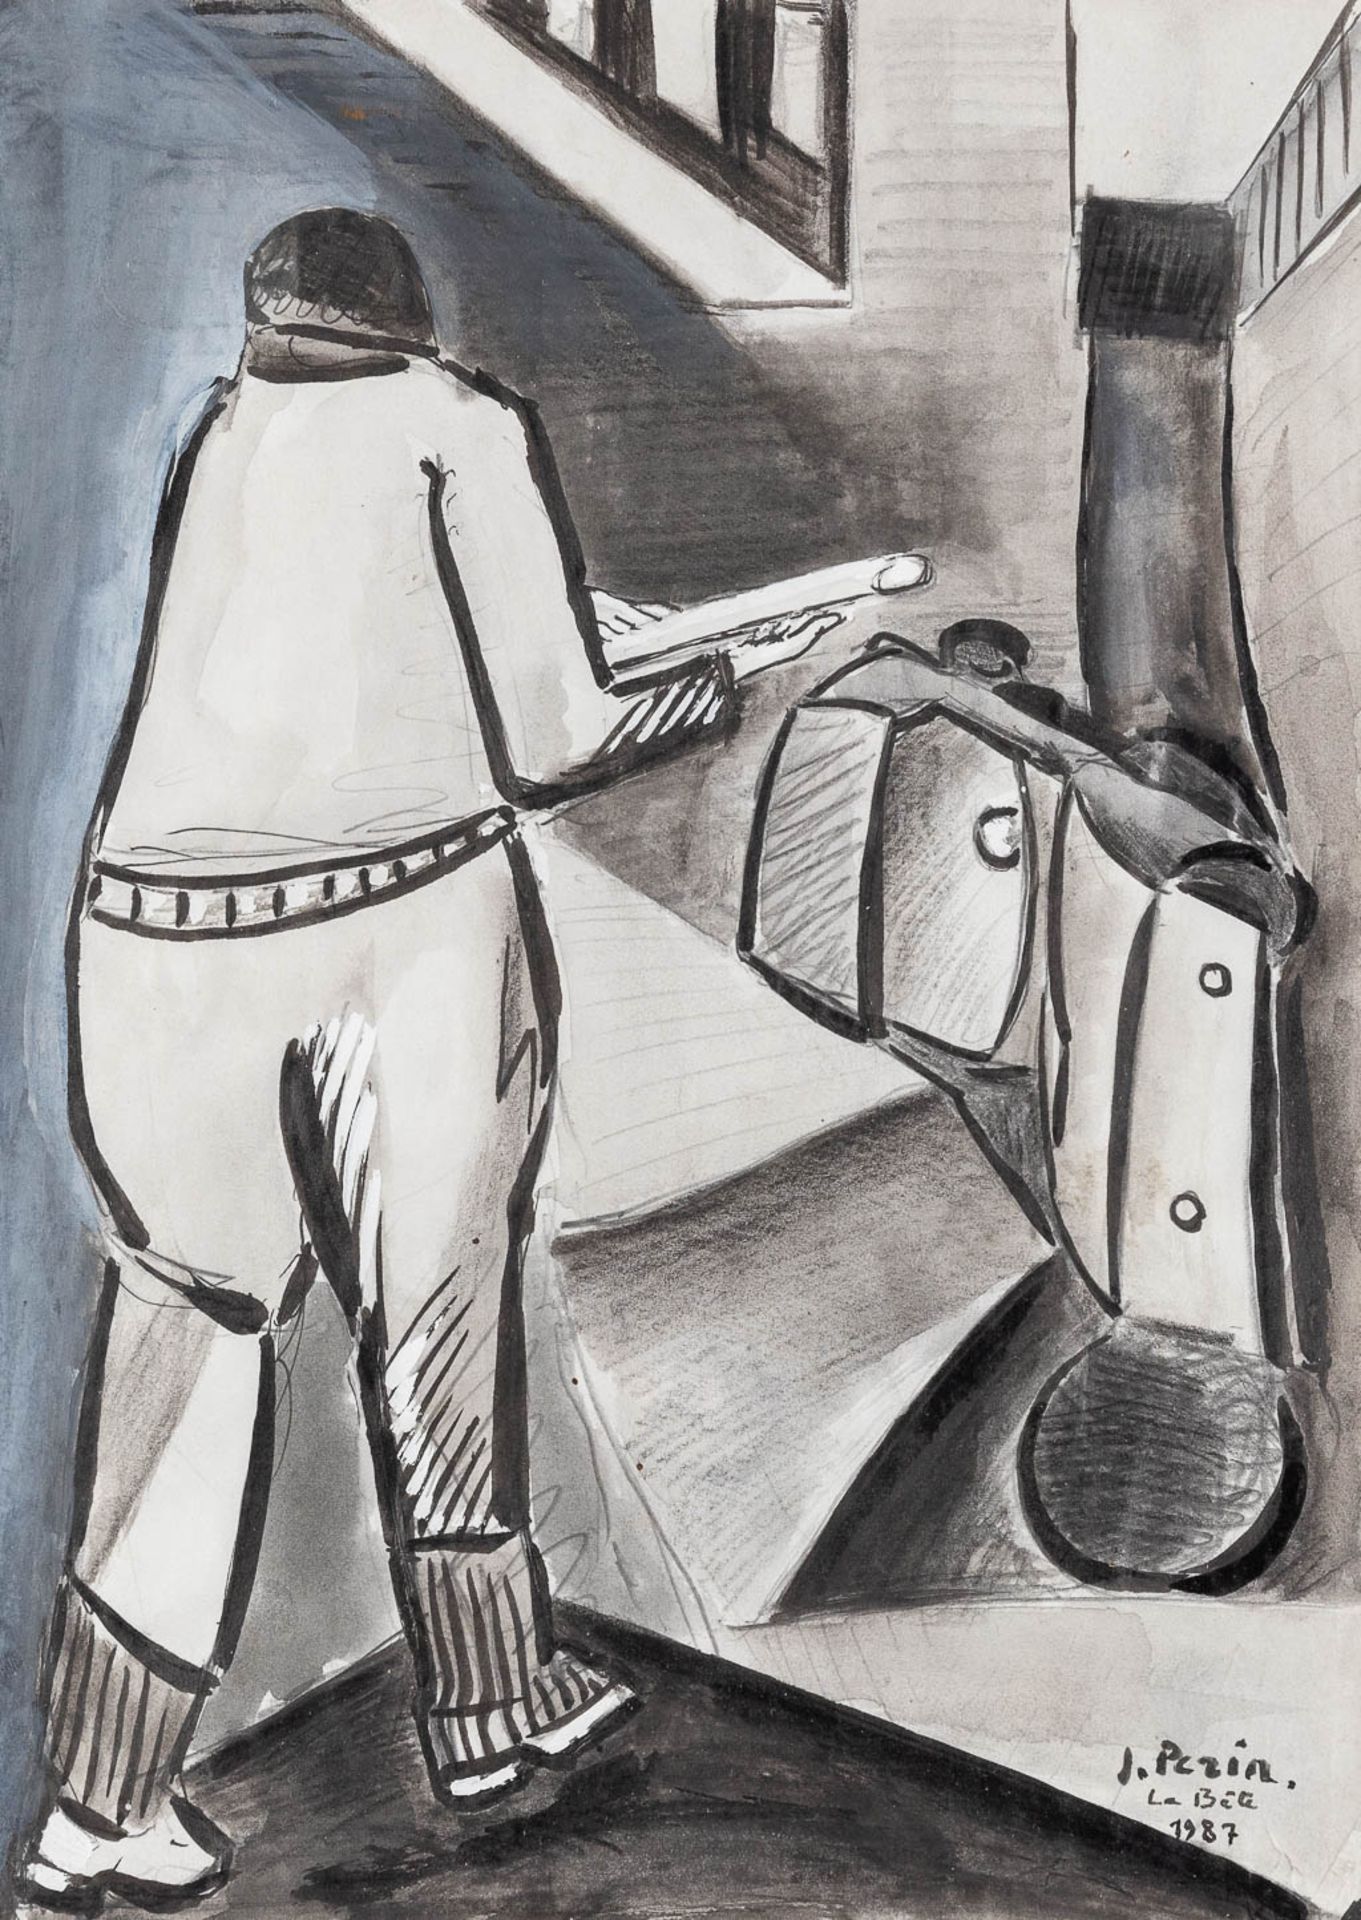 Jacques PERIN (1936) 'La Bte', watercolour on paper. 1987. (W: 21,5 x H: 30 cm)